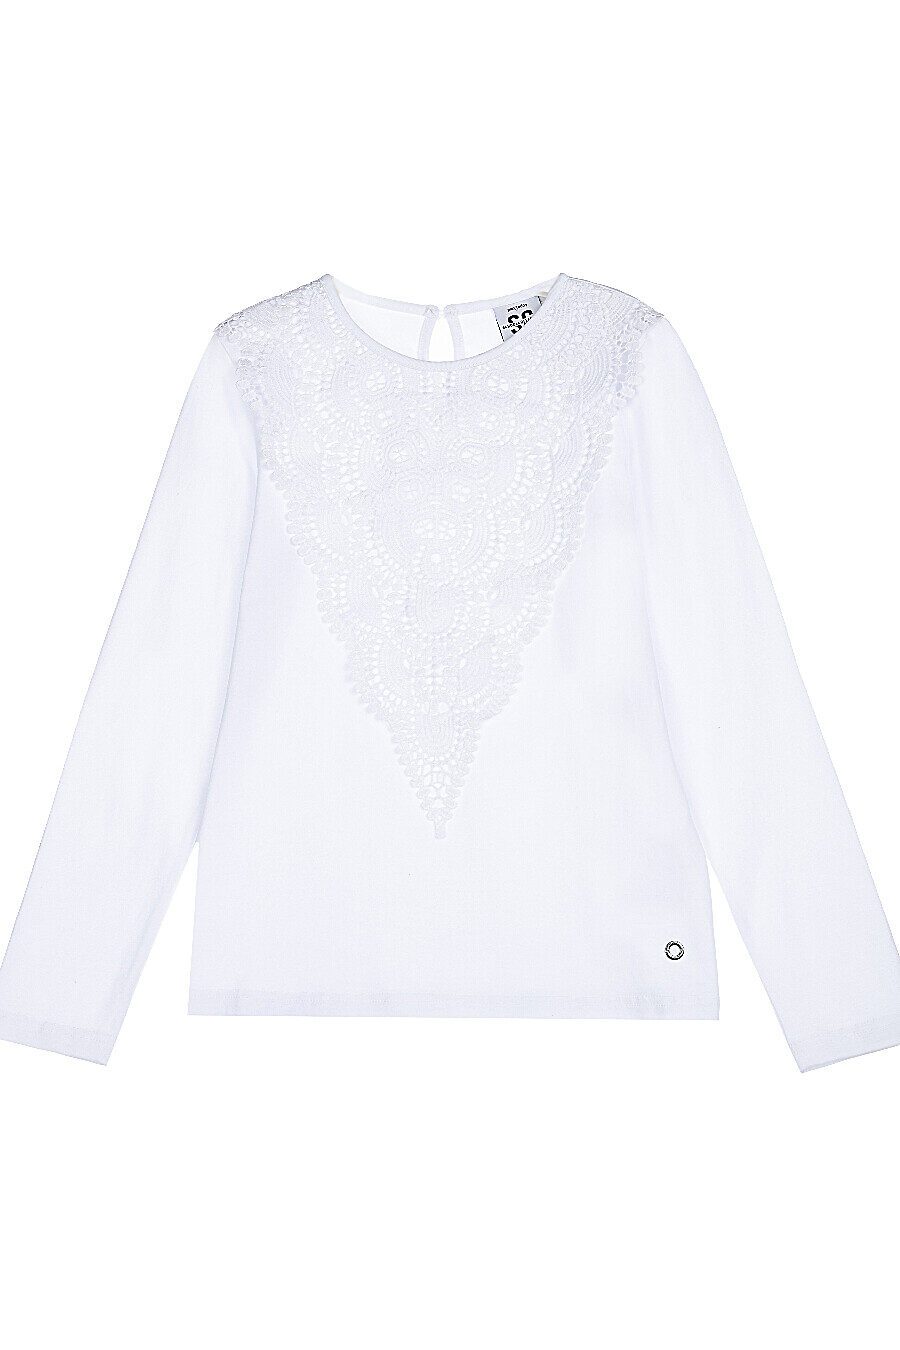 Блуза PLAYTODAY (784991), купить в Moyo.moda